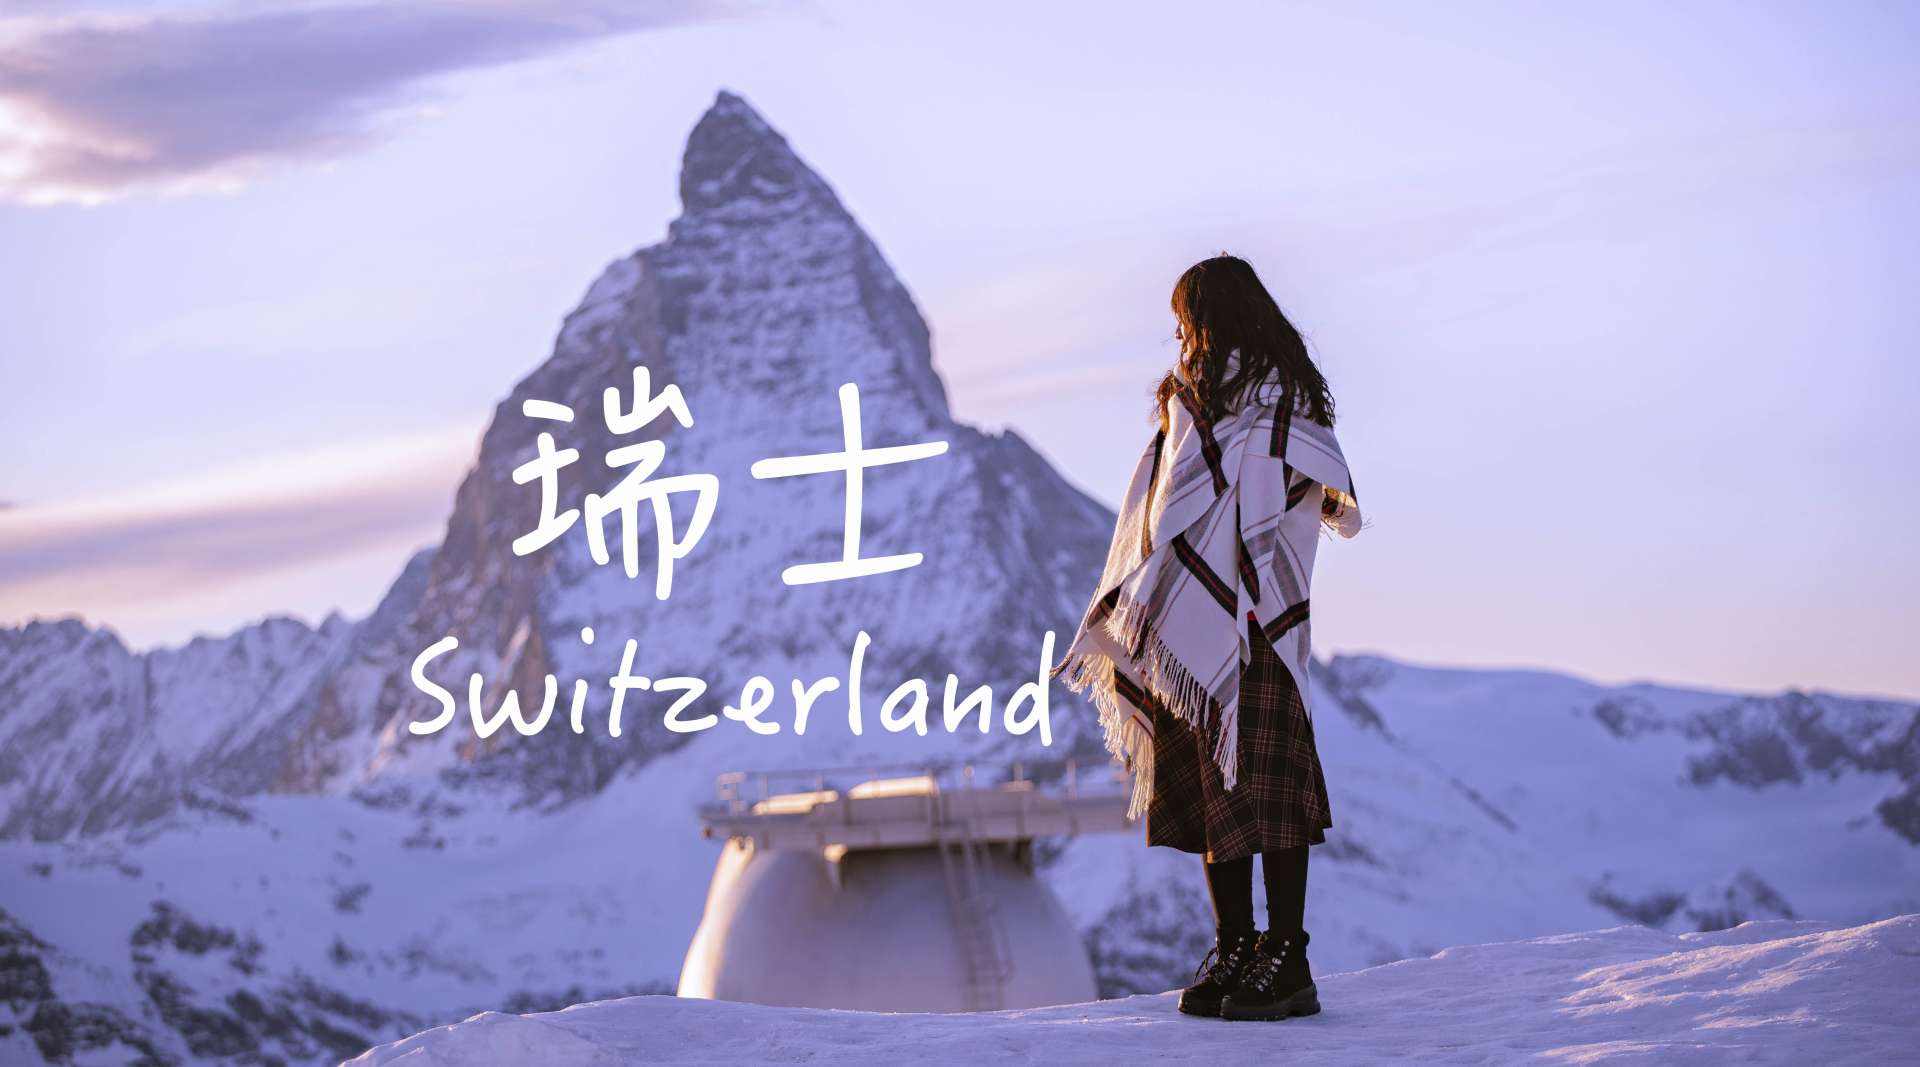 【旅行短片】《冬日瑞士》少女峰-马特洪峰-皮拉图斯峰 2020